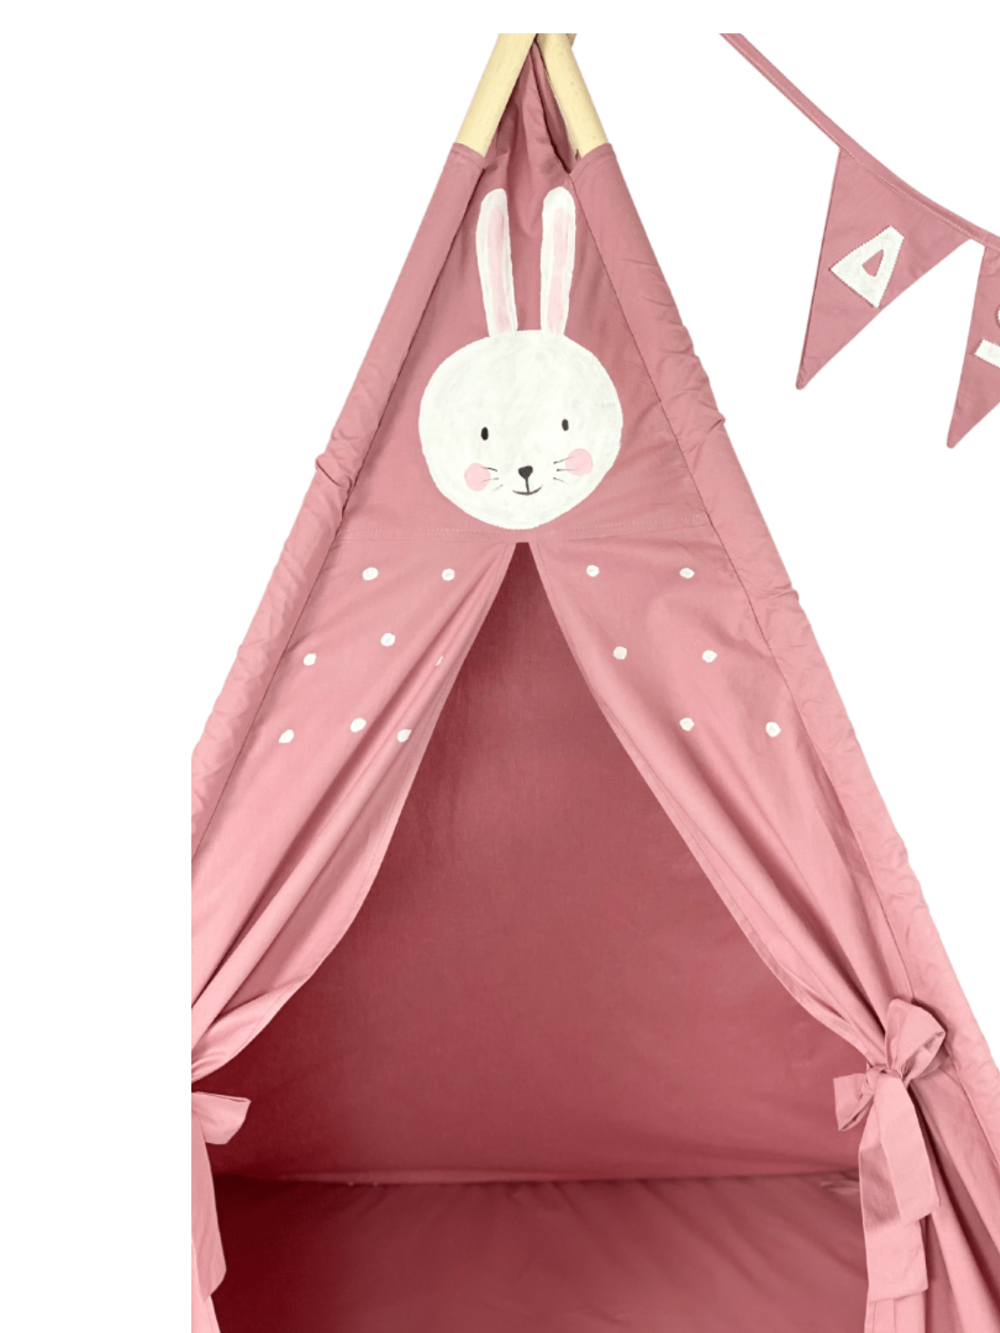 Παιδική Σκηνή - teepee tent Bunny - Ζωγραφισμένη στο χέρι